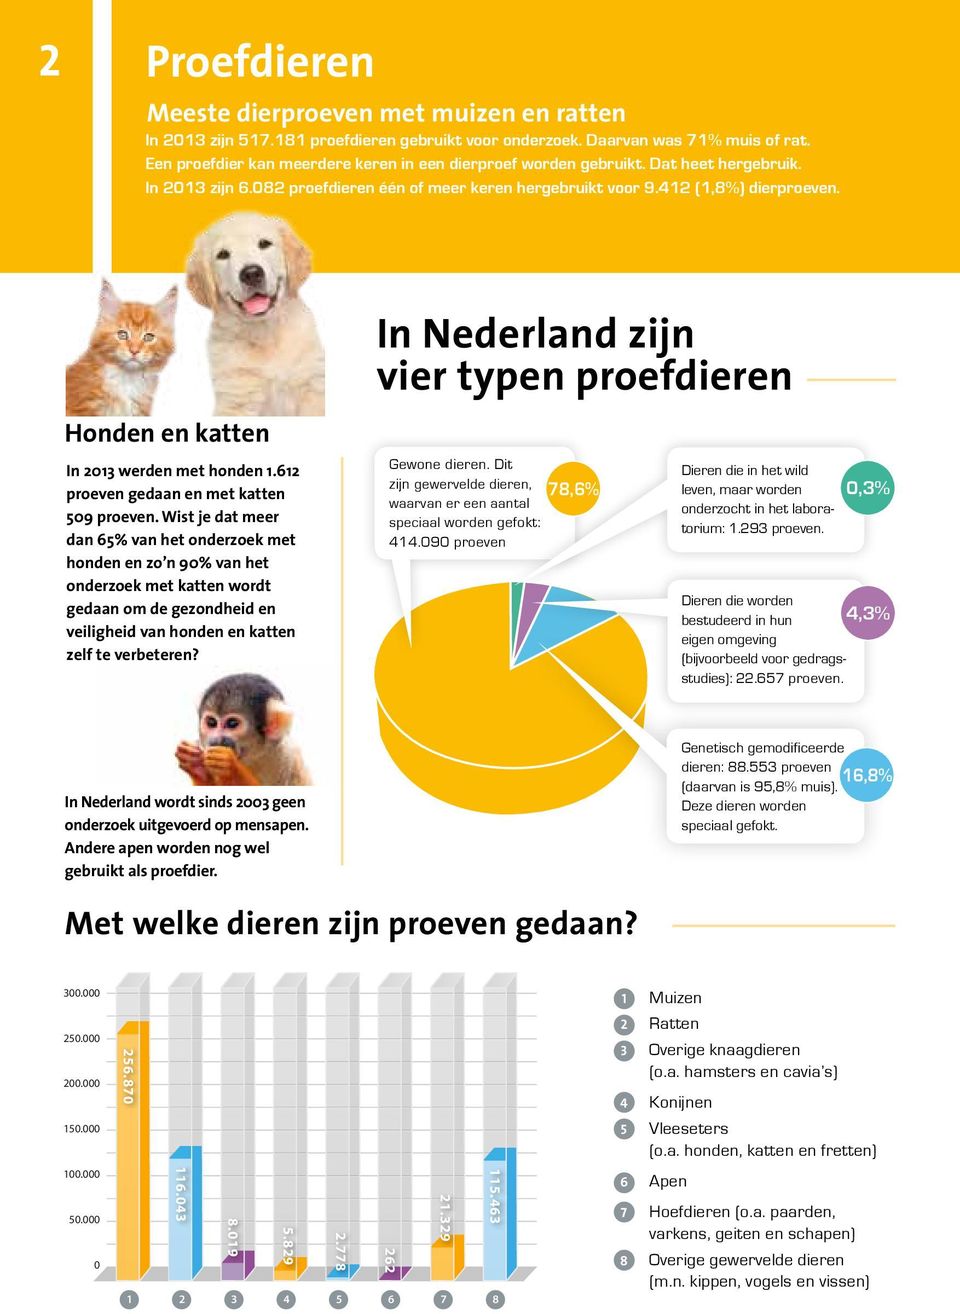 Honden en katten In 2013 werden met honden 1.612 proeven gedaan en met katten 509 proeven.